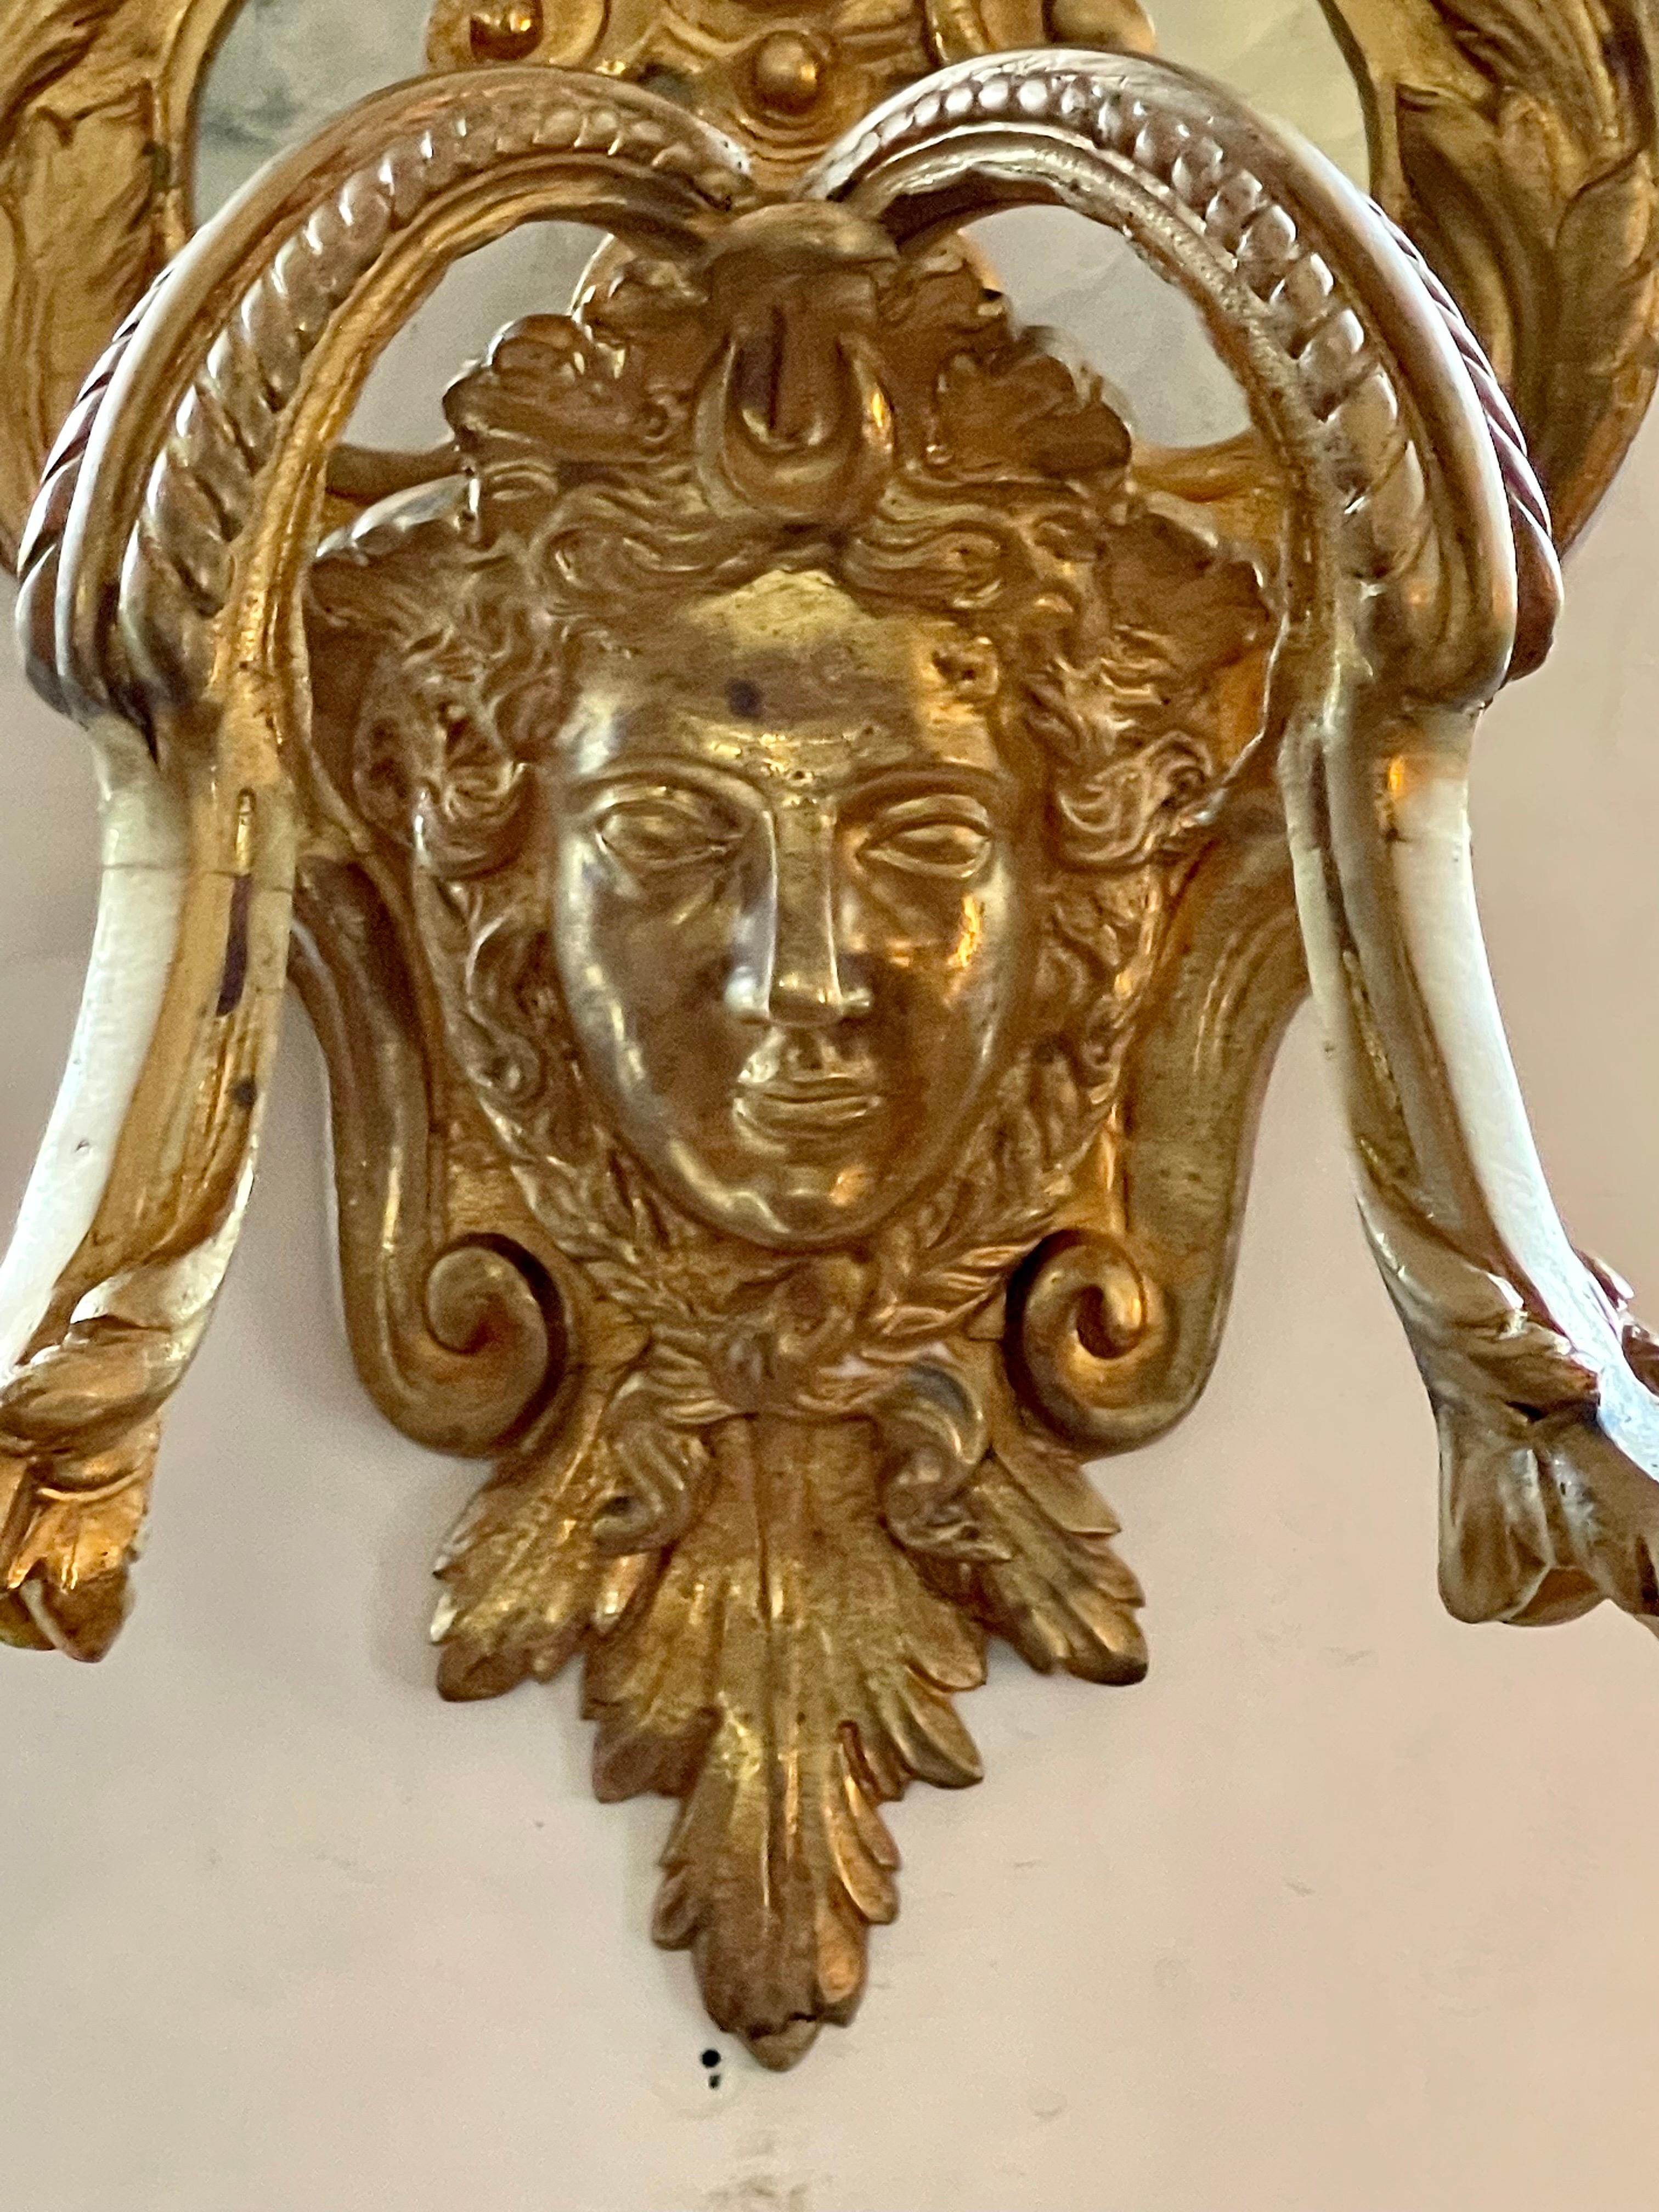 Ein feines Paar von Französisch Louis XV-Stil vergoldet Bronze Doppelarm Wandleuchter. Zwei mit Federn und Glockenblumen geschmückte Arme ragen aus den Gesichtern der Karyatiden heraus. Die Lair-förmige Rückenplatte ist mit Girlanden, Blattwerk und